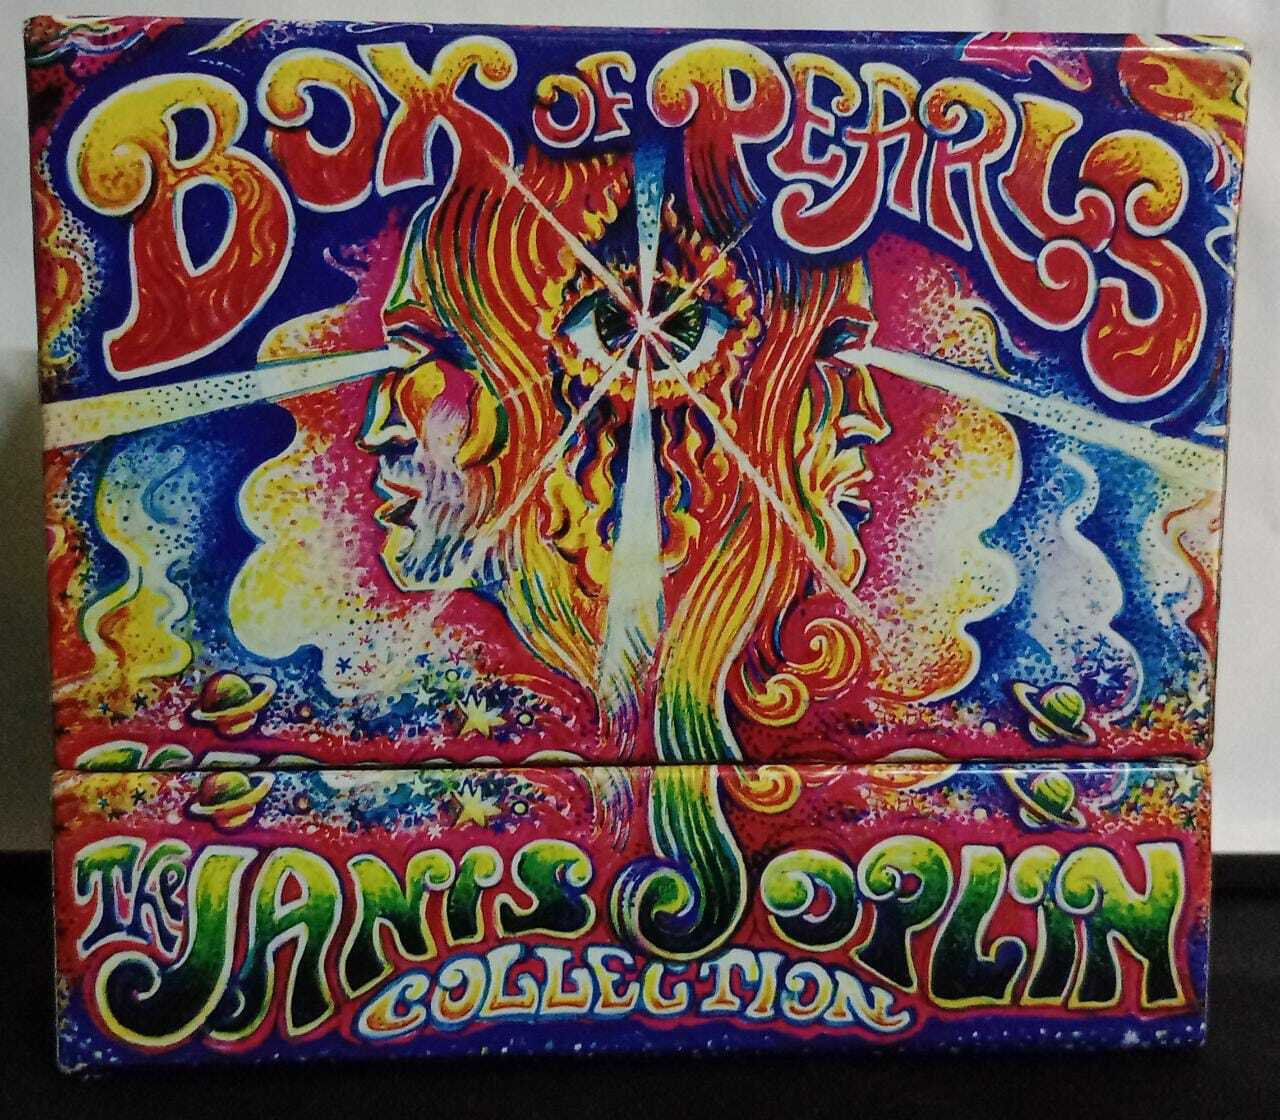 CD - Janis Joplin - Box of Pearls (5 CDs)